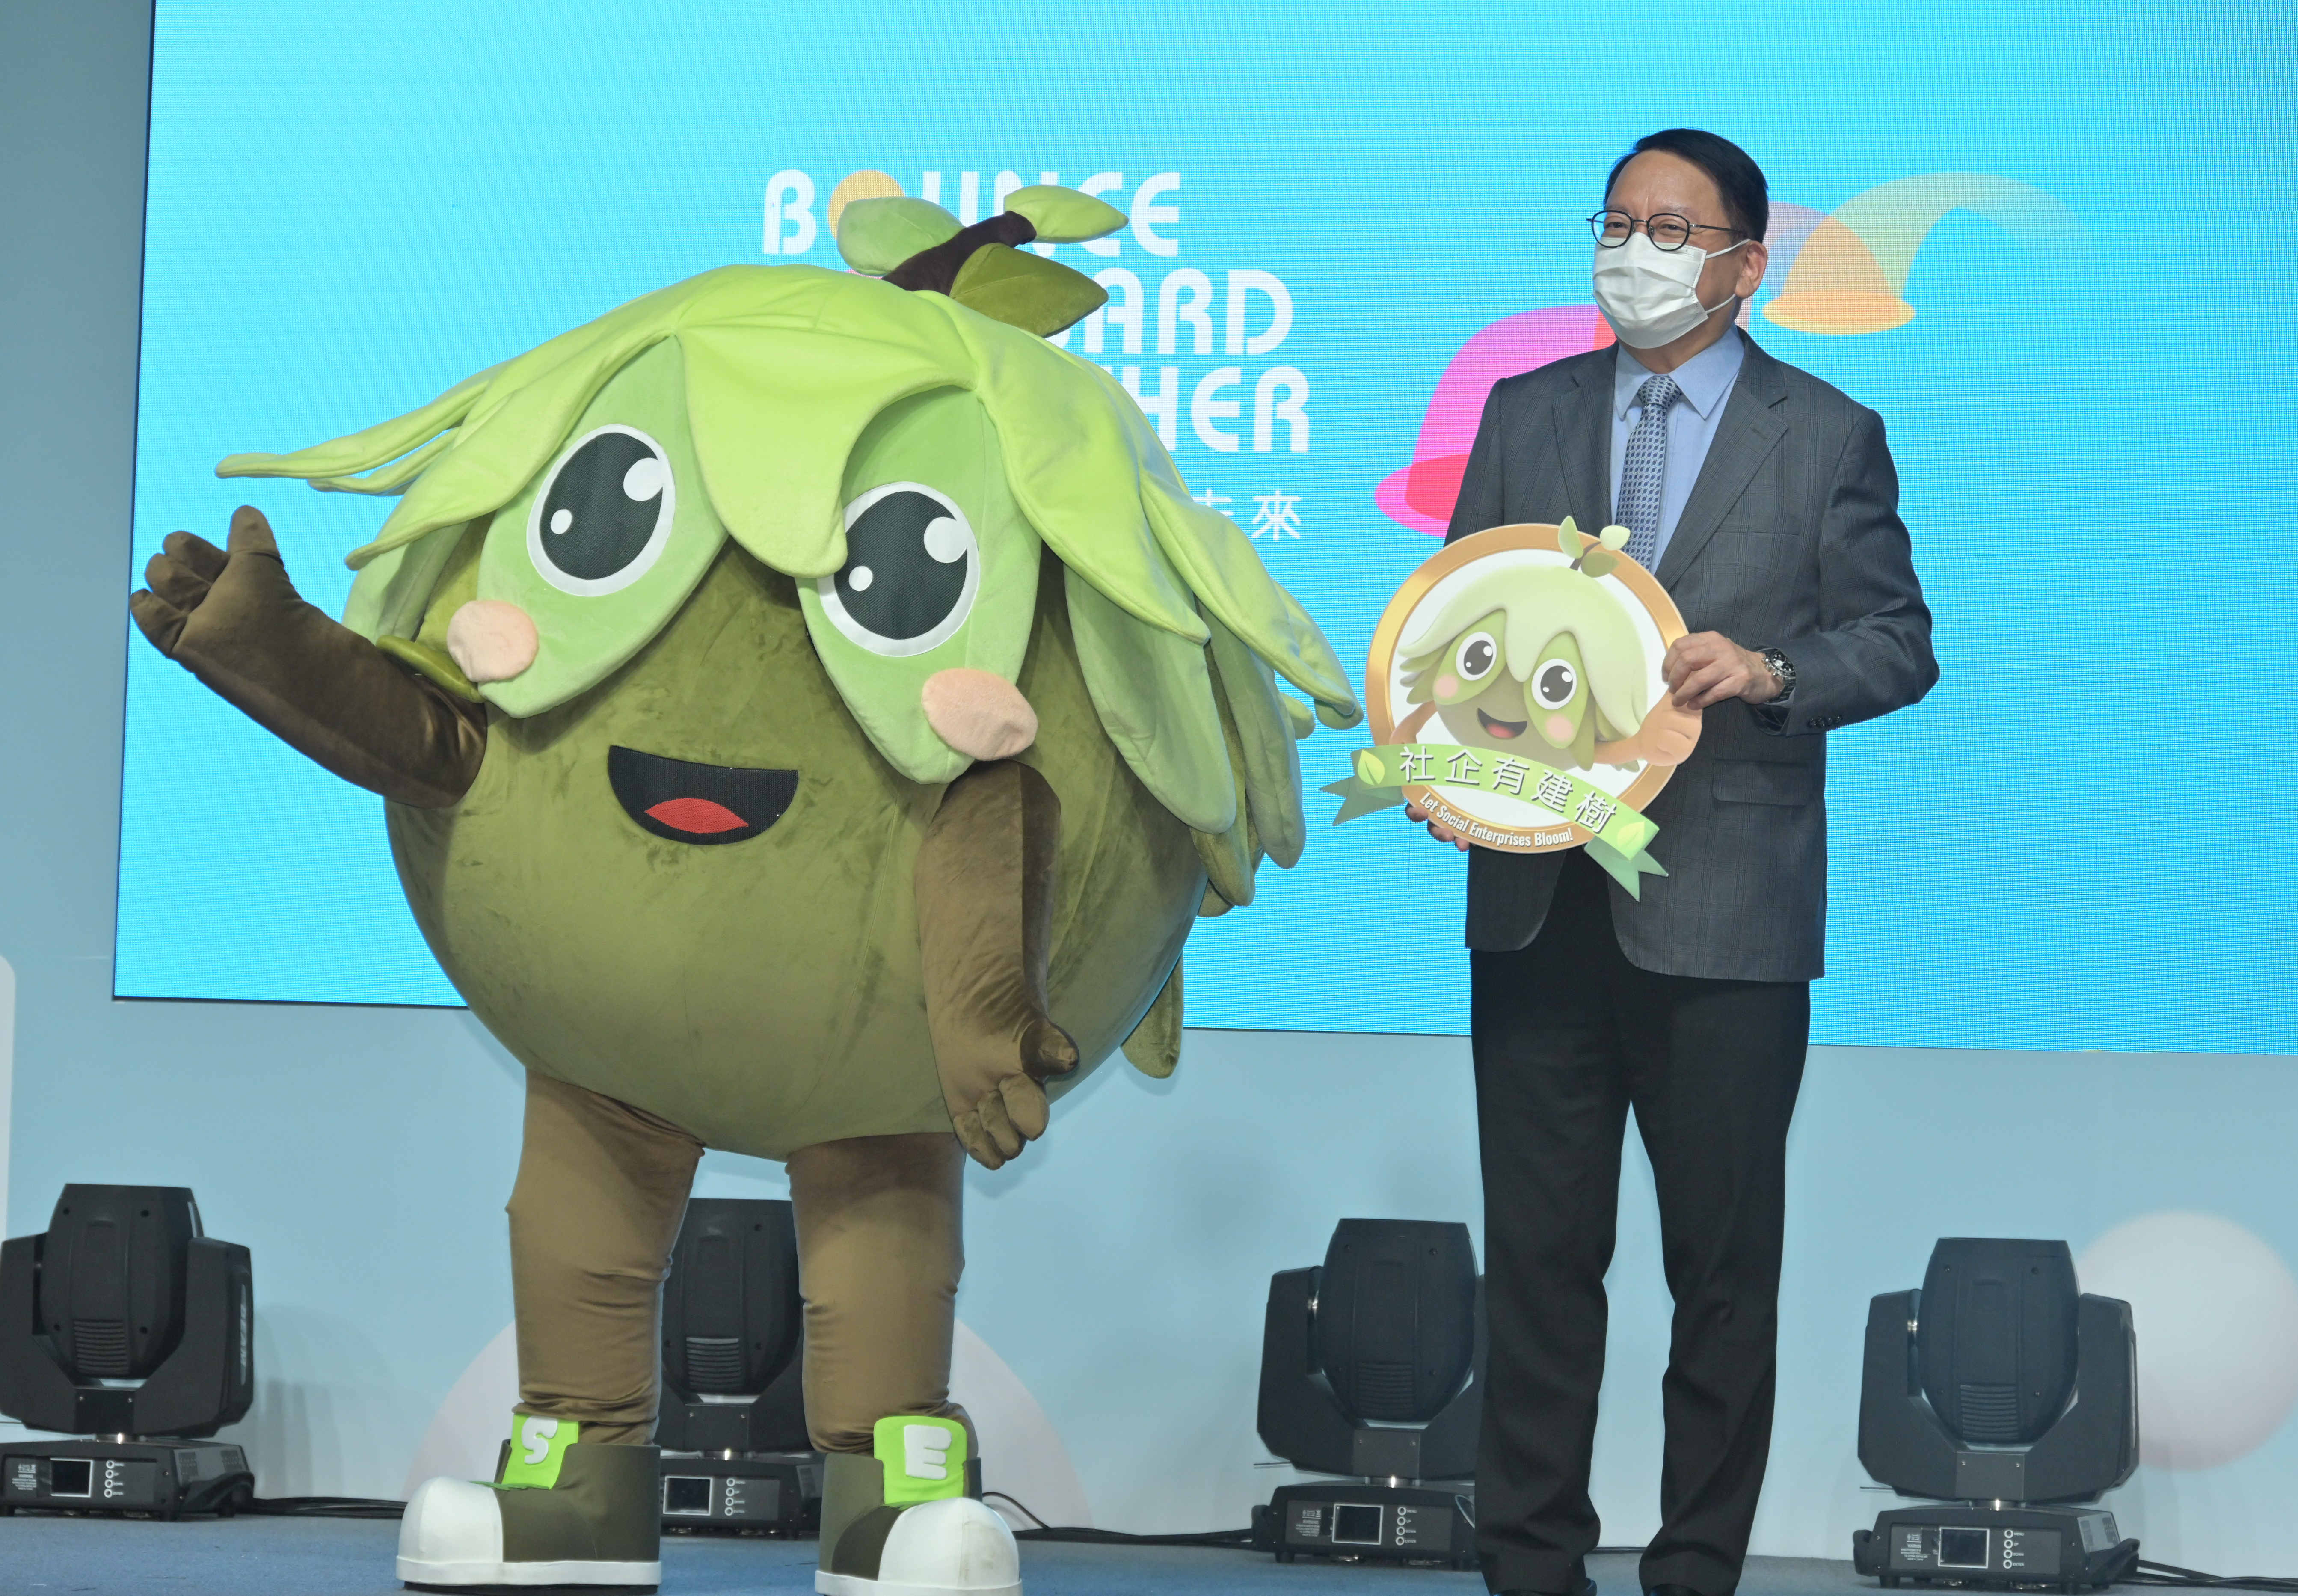 政務司司長陳國基陳國基與社企吉祥物「友建樹」在活動上合照。